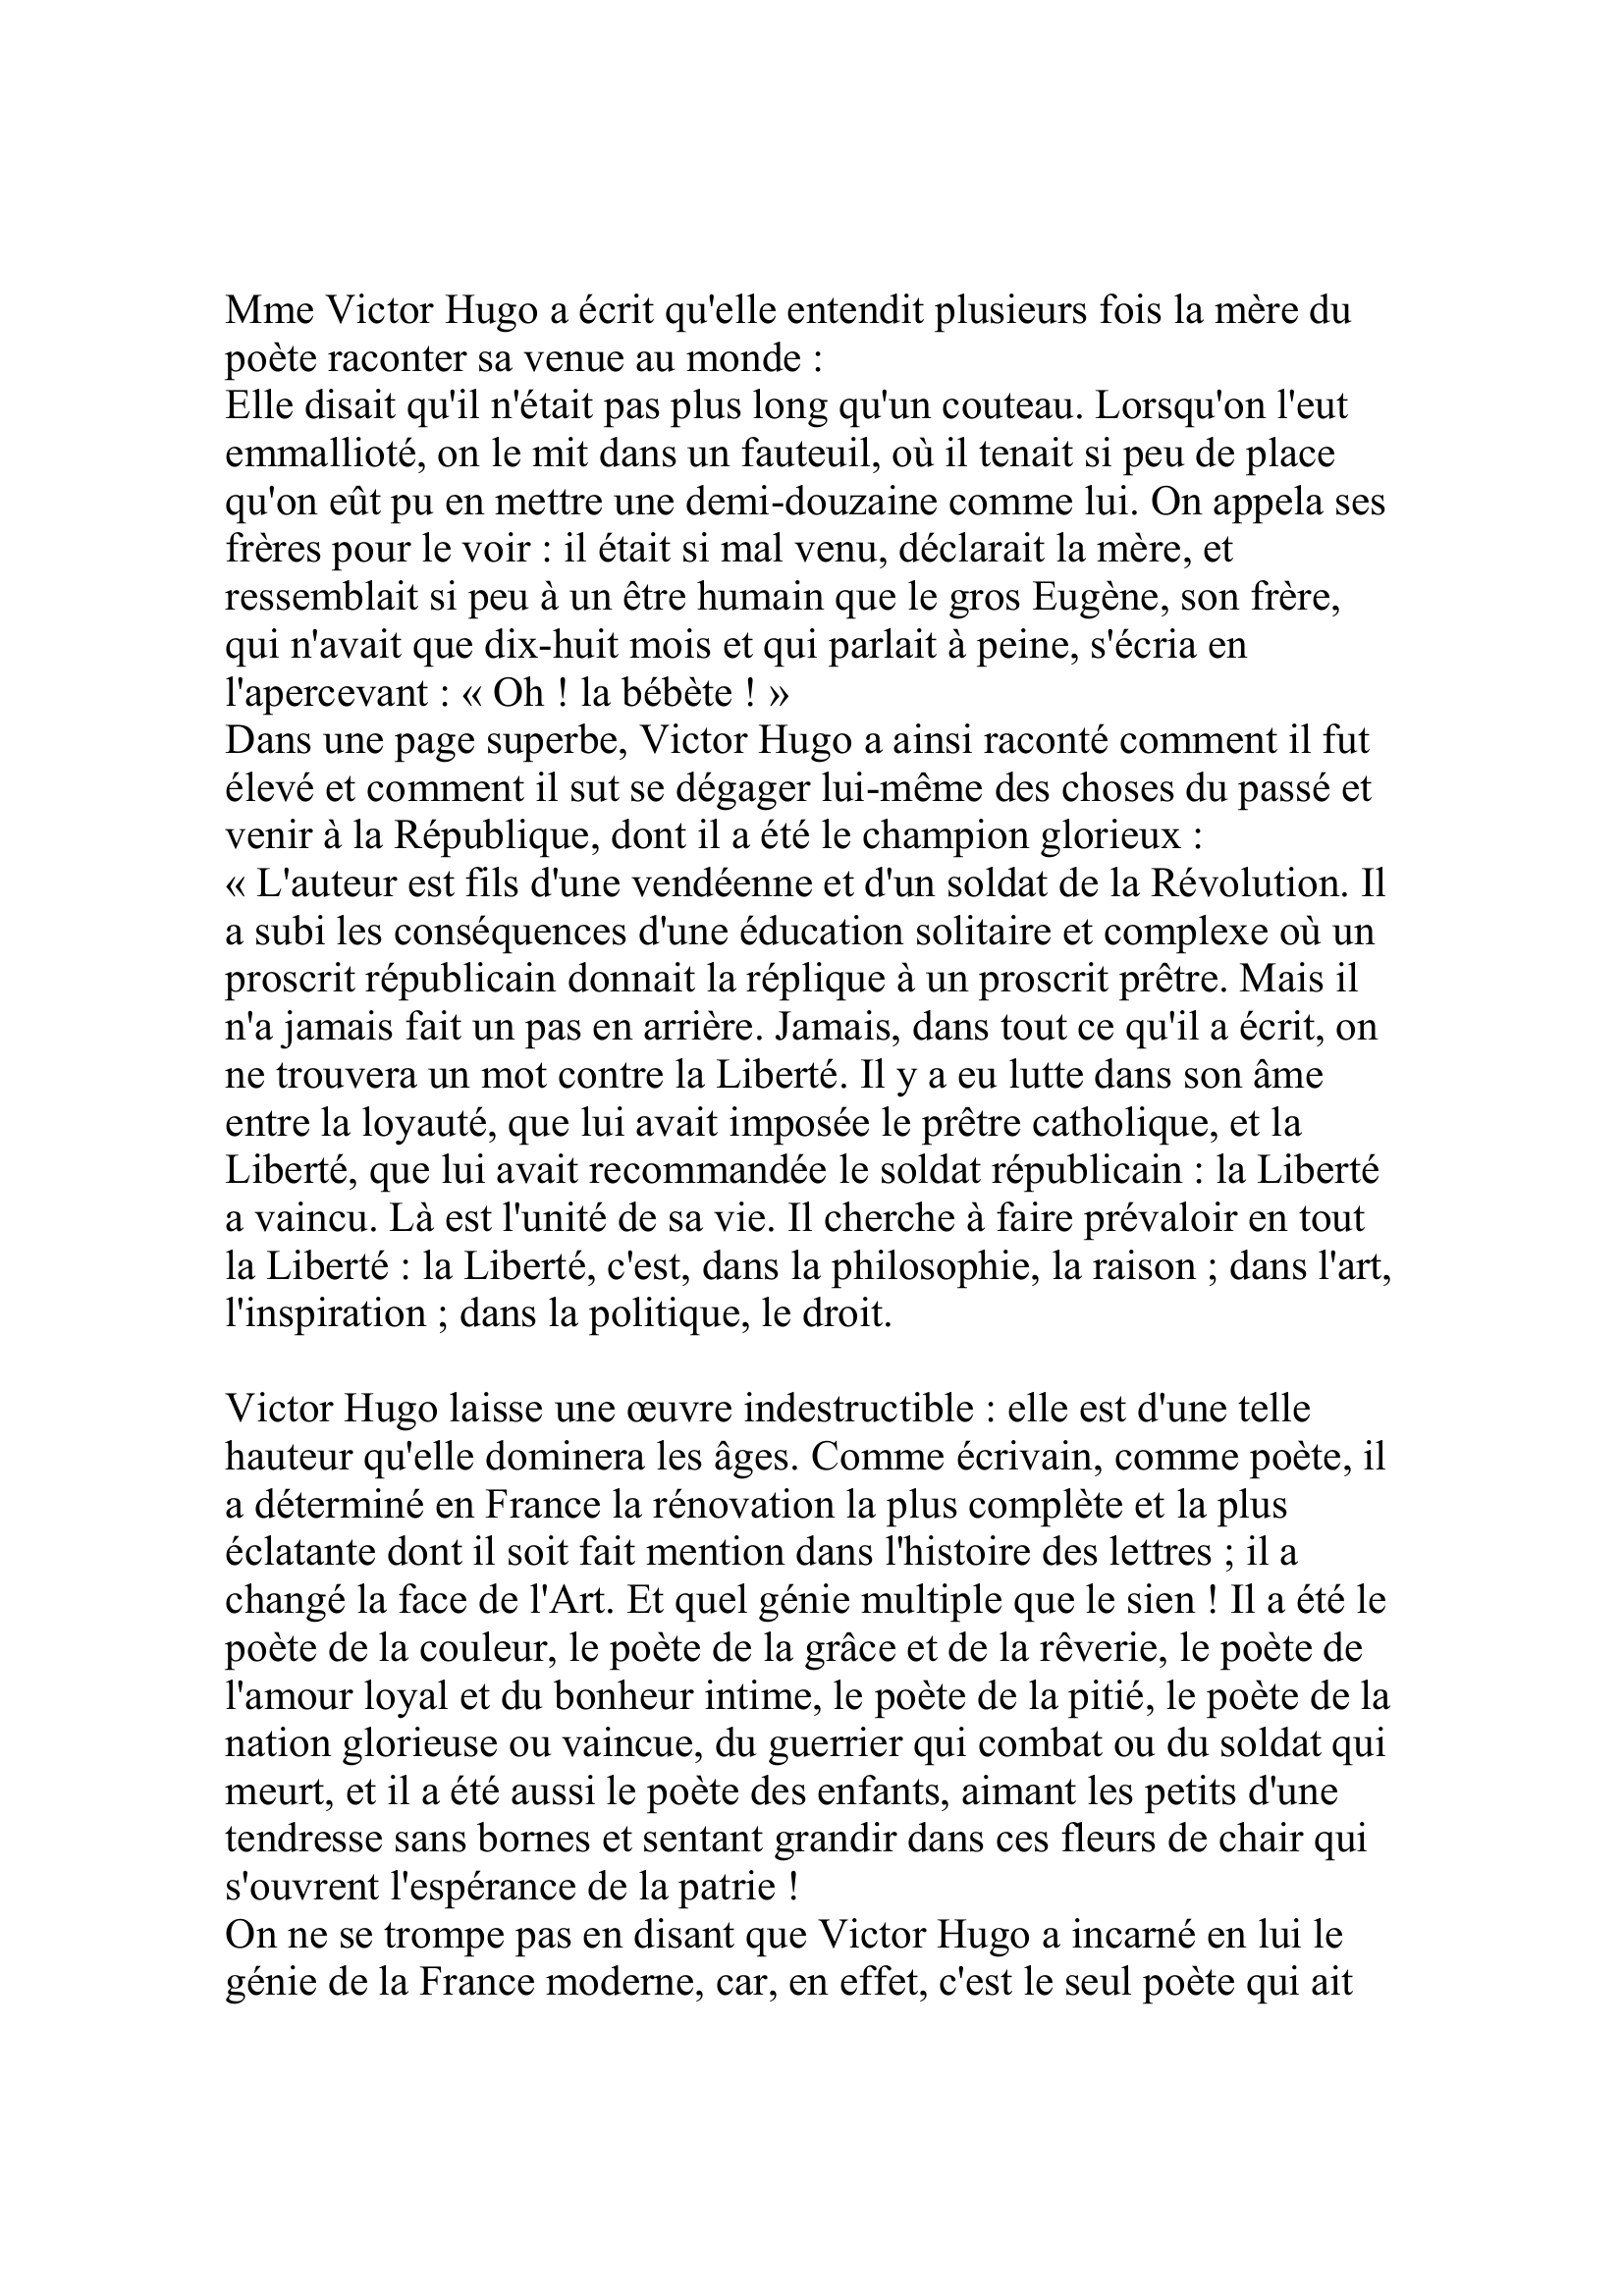 Prévisualisation du document Le Petit Parisien
Dimanche 24 mai 1885

MORT DE VICTOR HUGO
La fatale nouvelle  - à laquelle hélas !